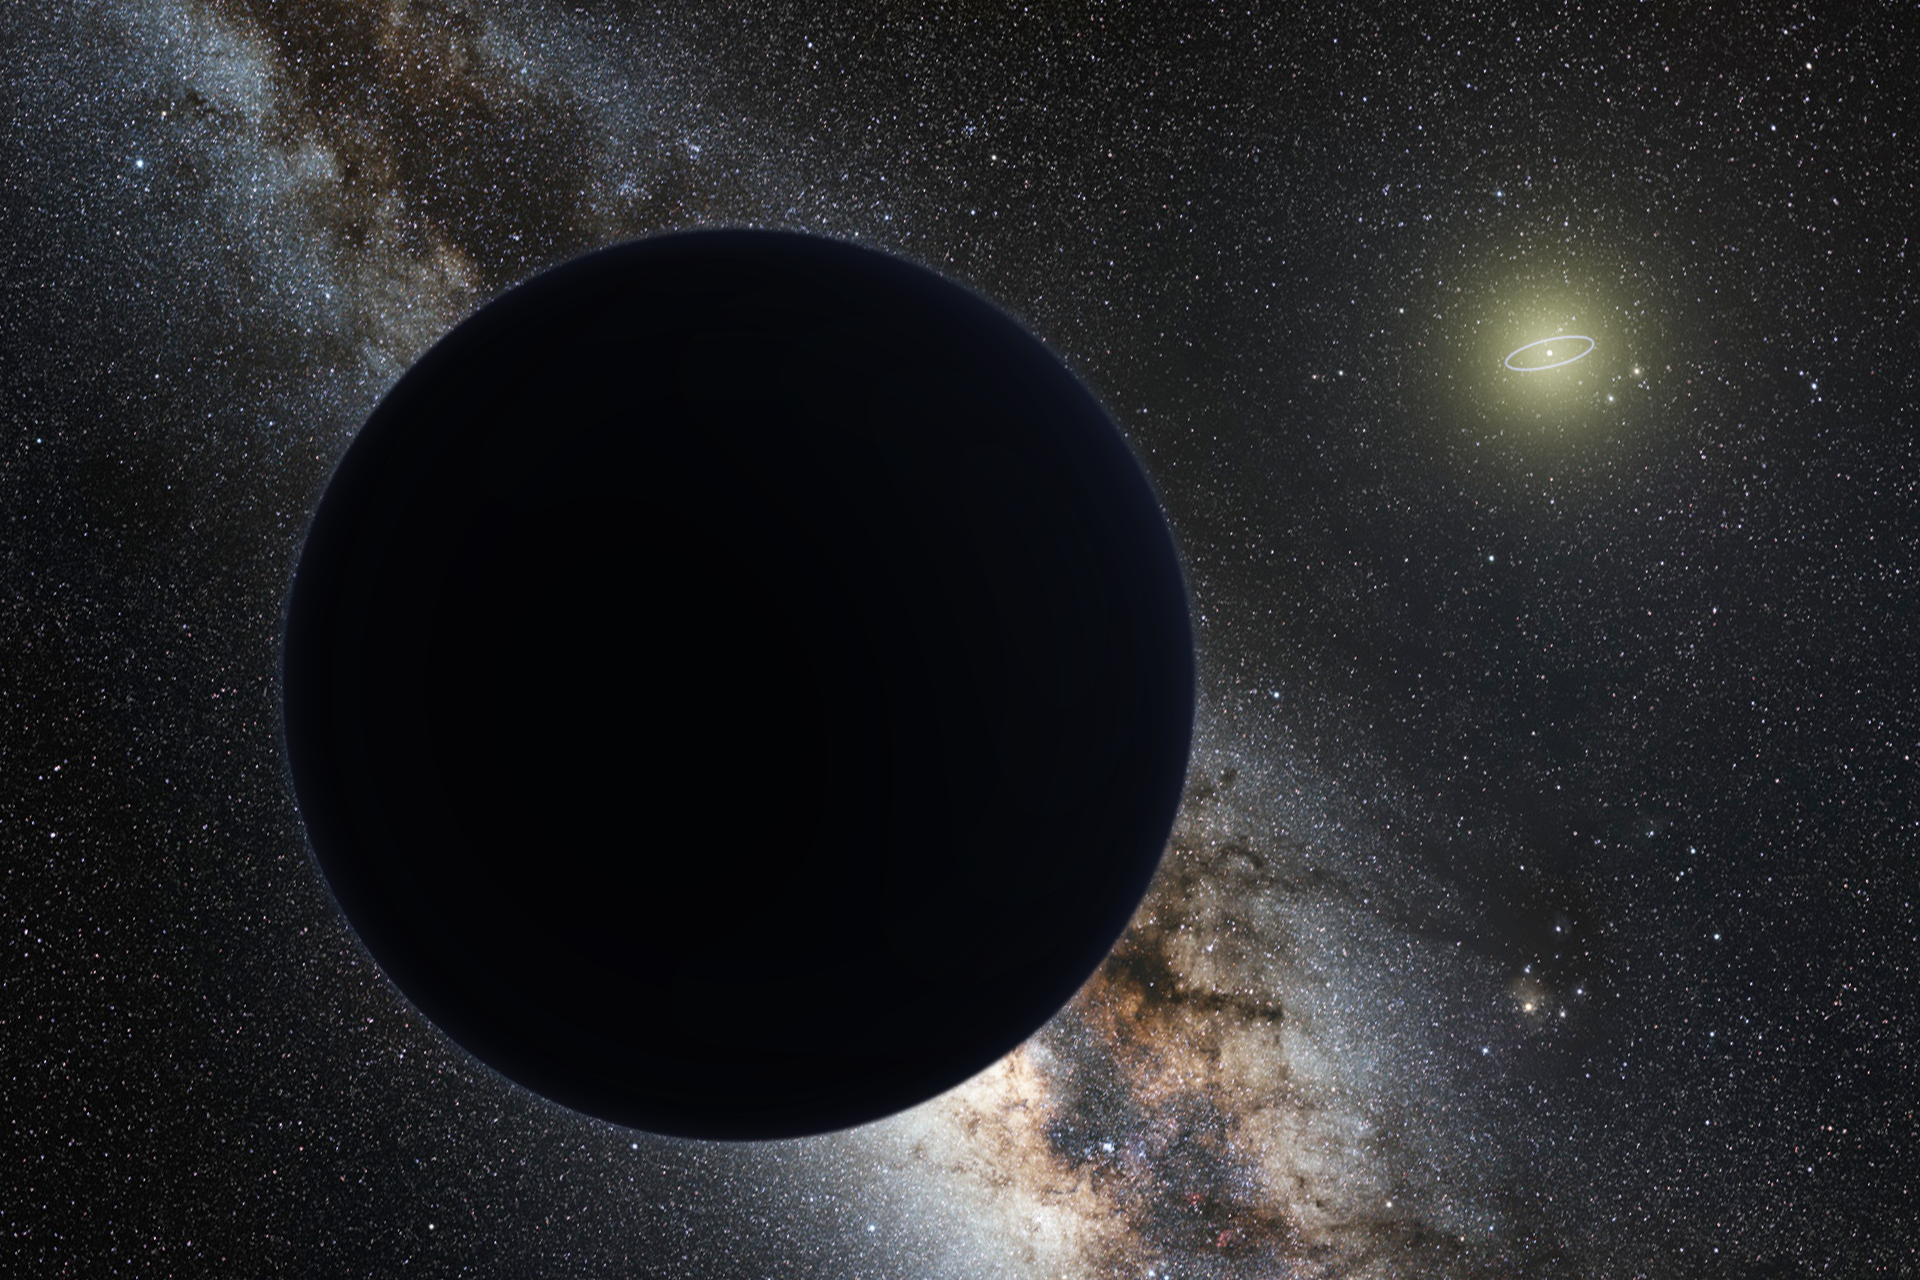 黑洞会吞噬地球吗？如果太阳变成黑洞会怎样？专家给出答案